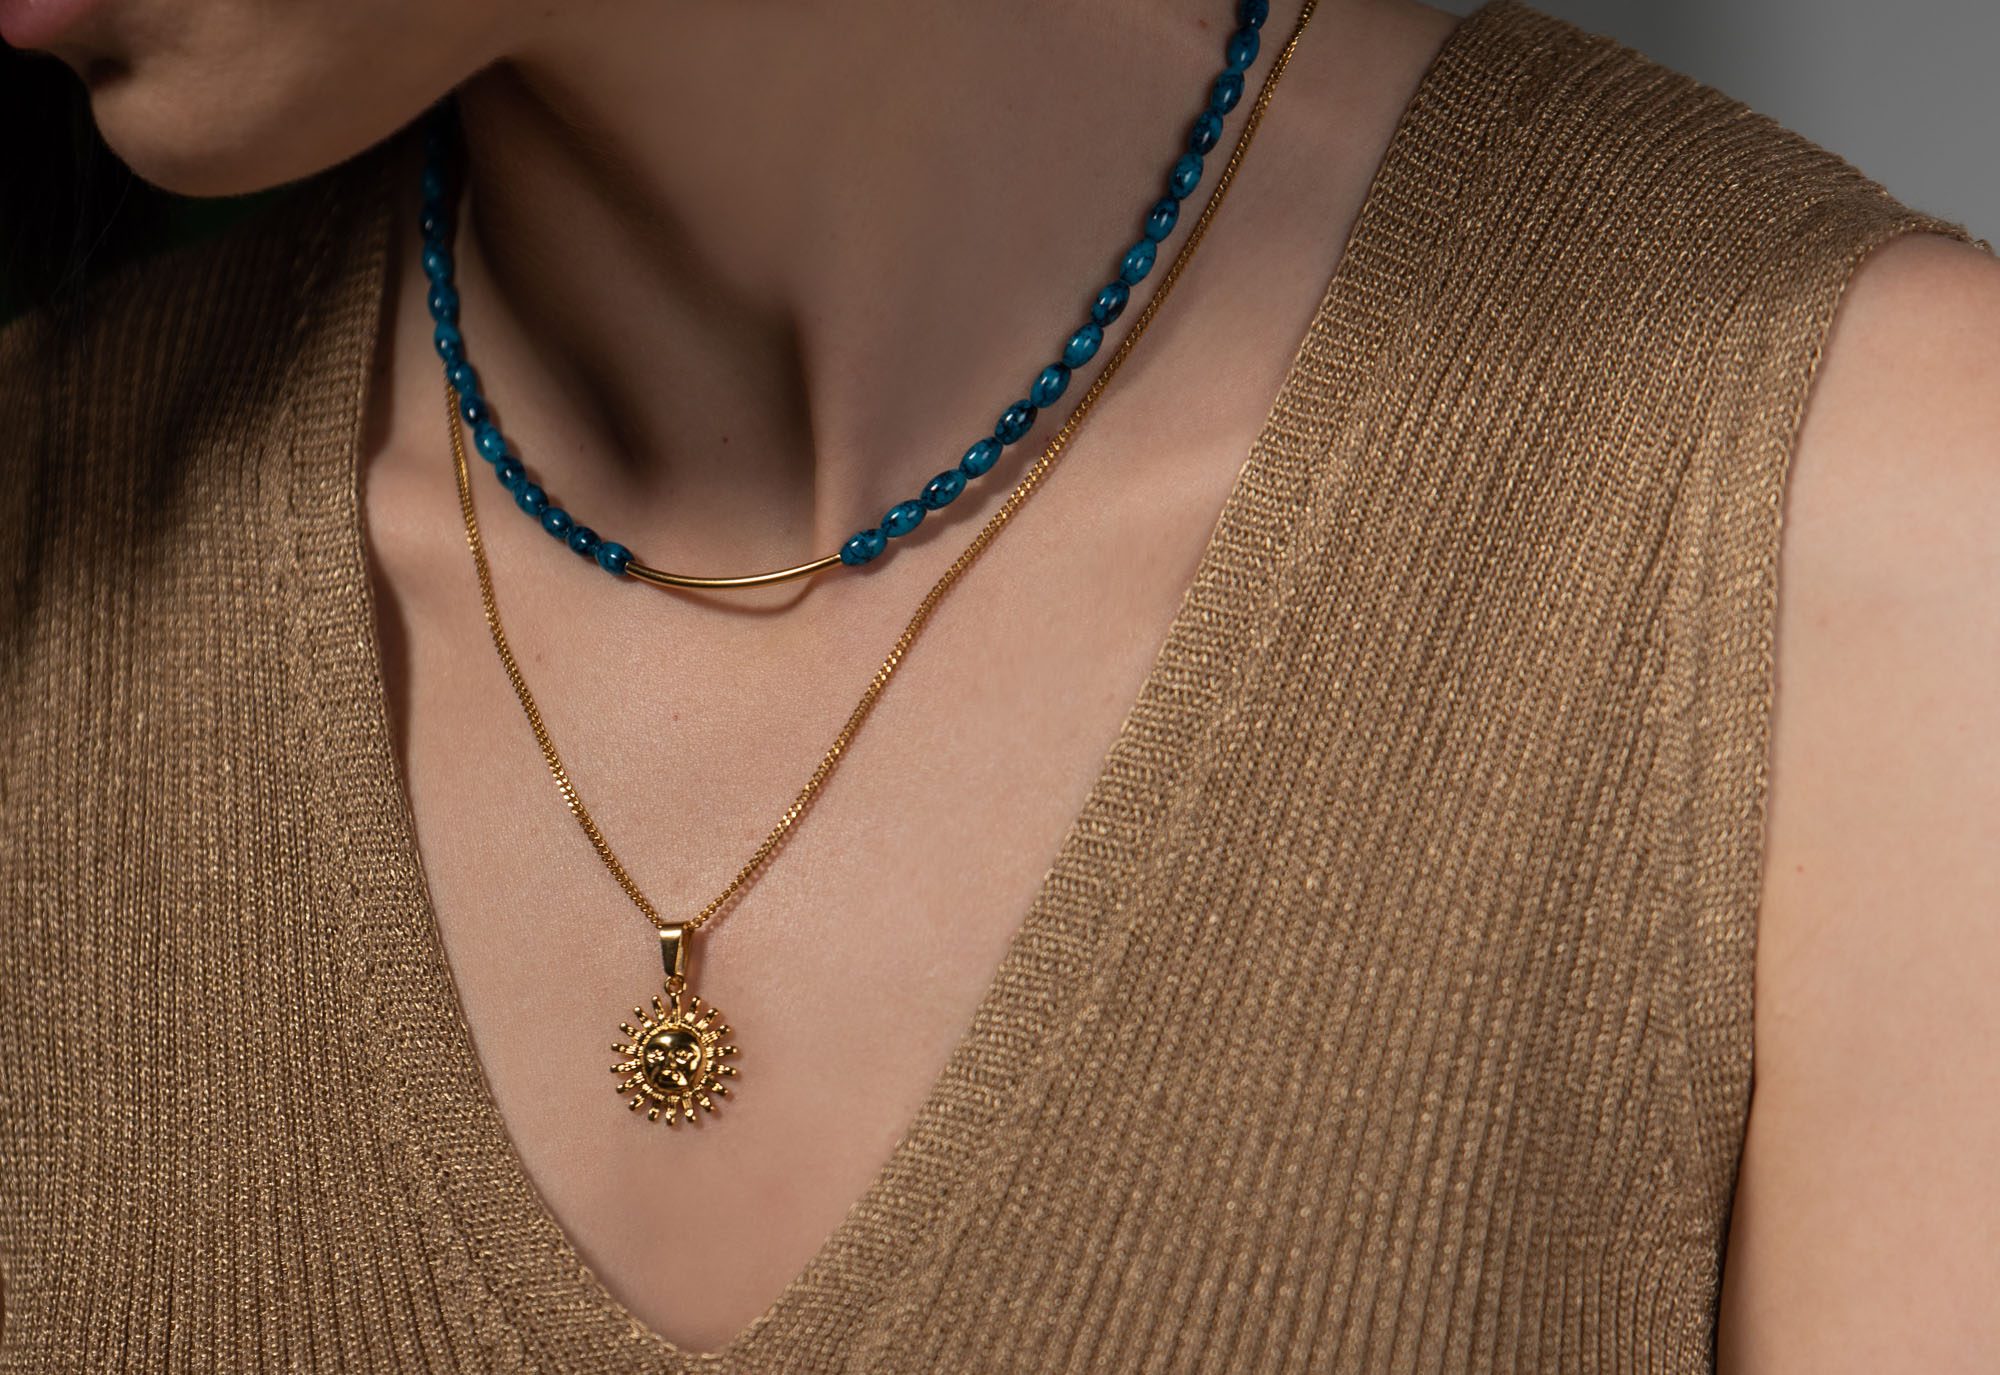 Luna y sol jewels: Τα πιο stylish κοσμήματα για να αναβαθμίσεις κάθε σου look από το πρωί έως το βράδυ!